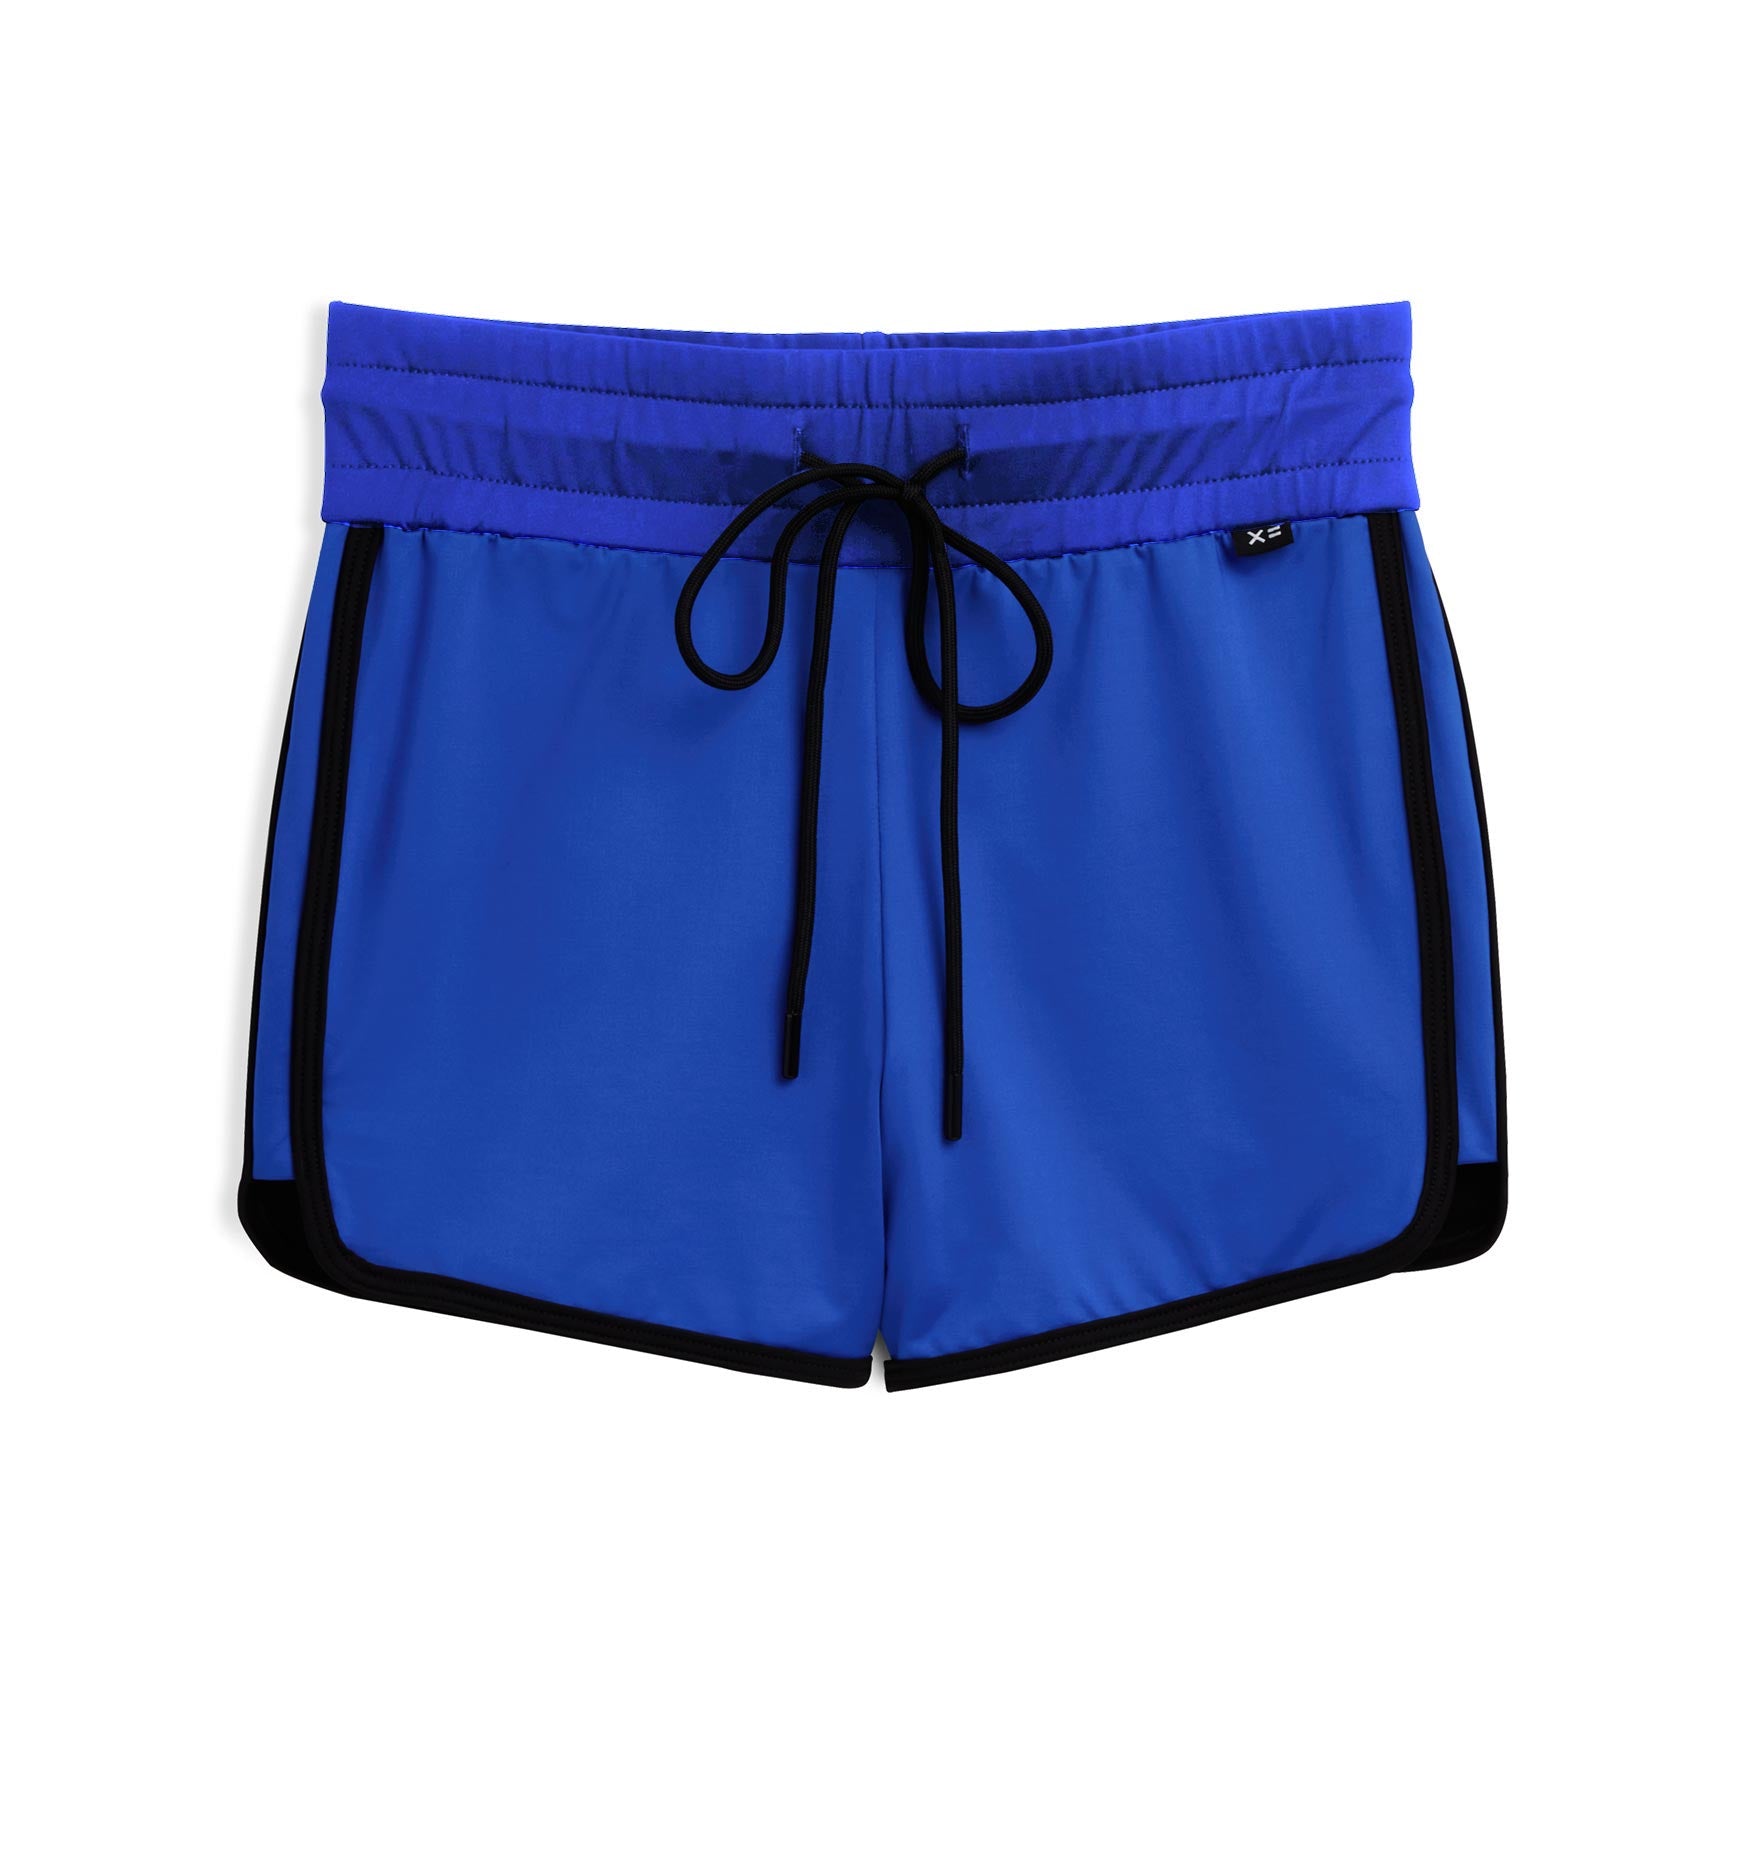 Swimwear: Unisuits, Swim Tanks & Shorts